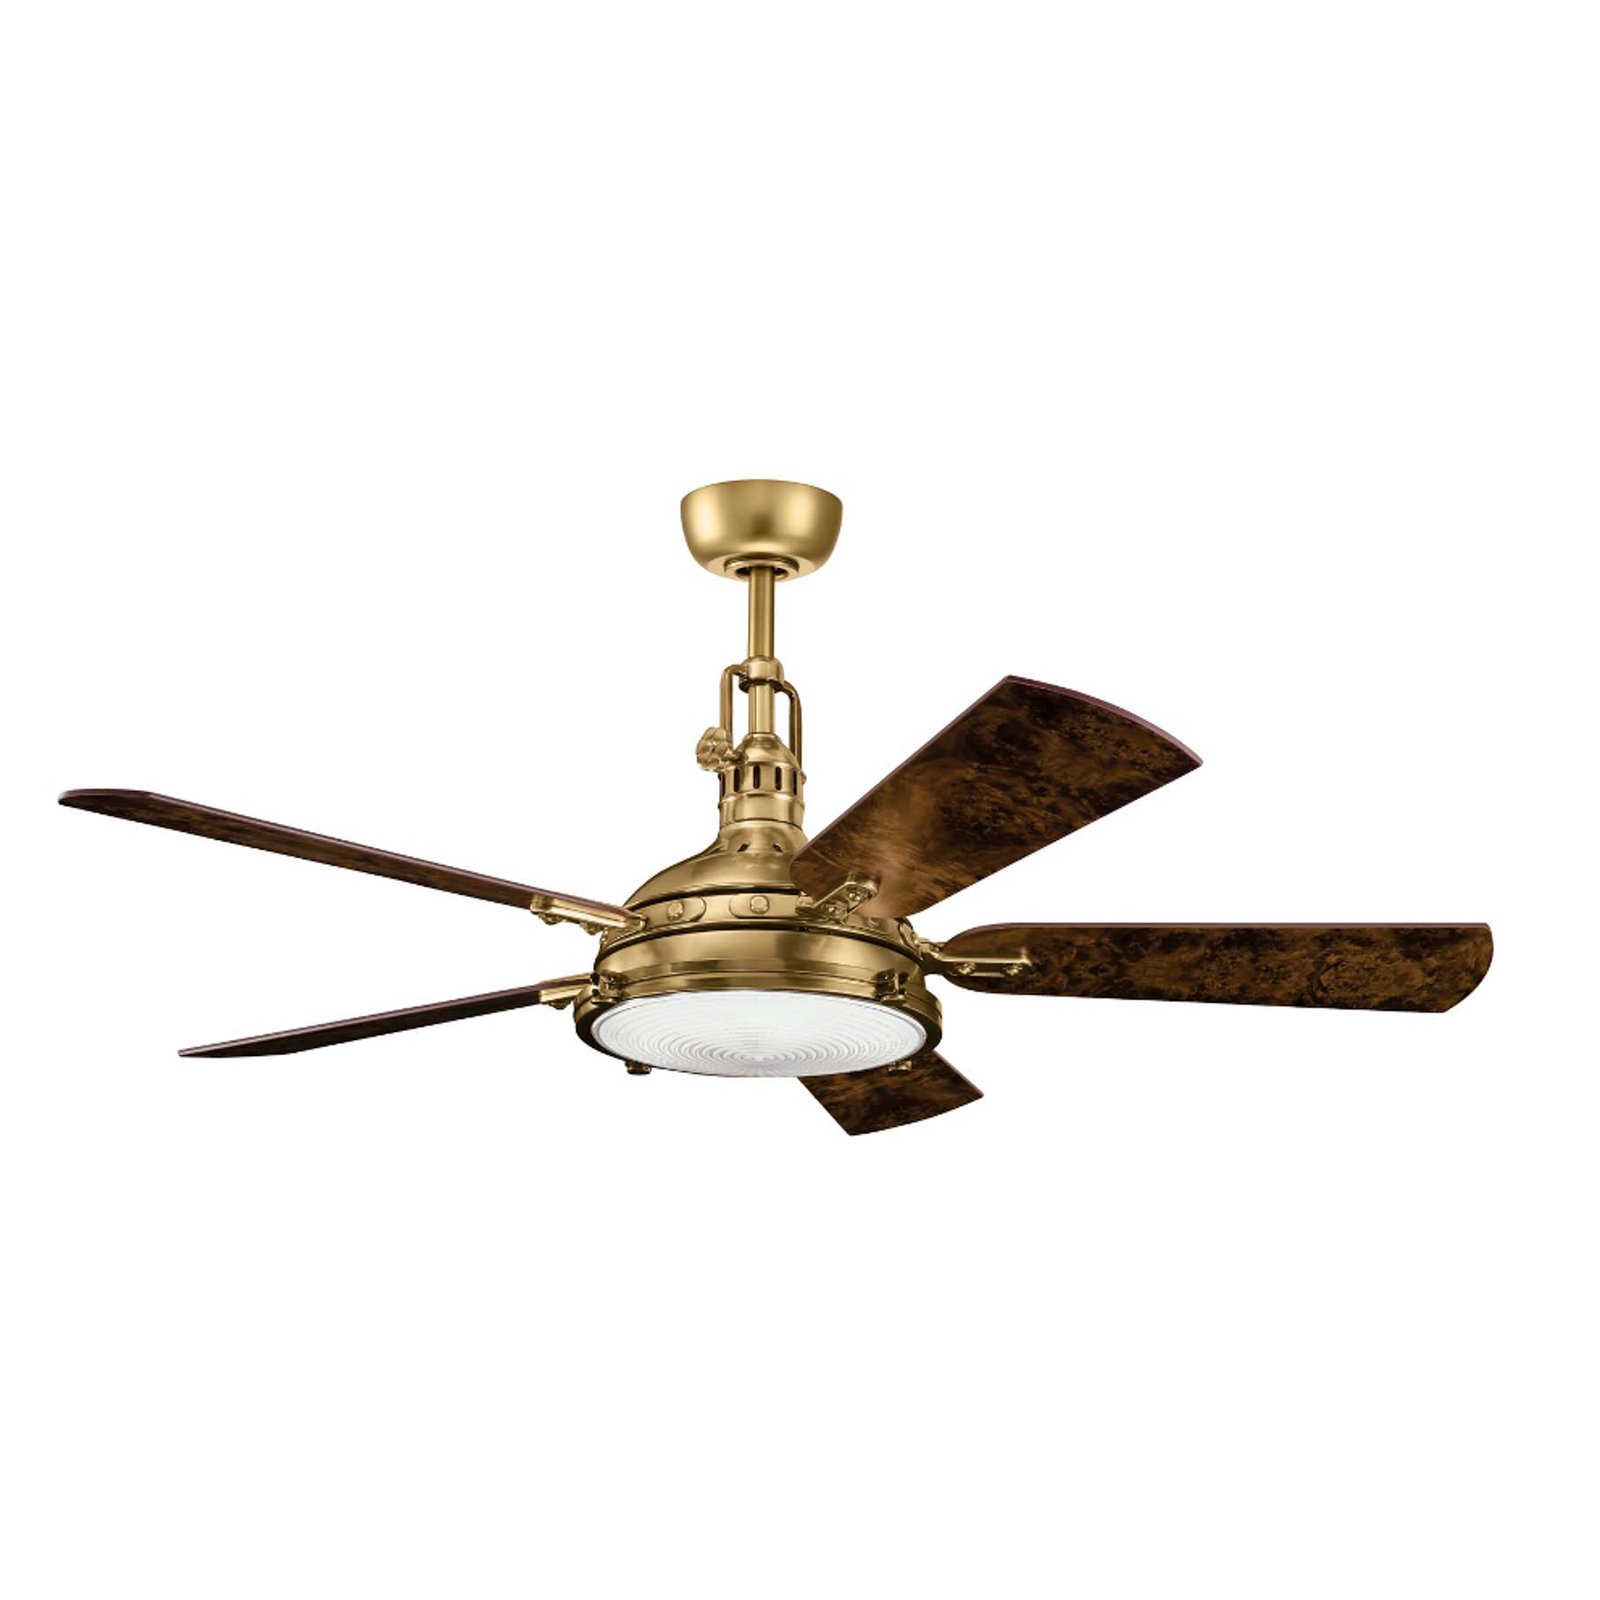 LED ceiling fan Hatteras Bay 56, antique brass